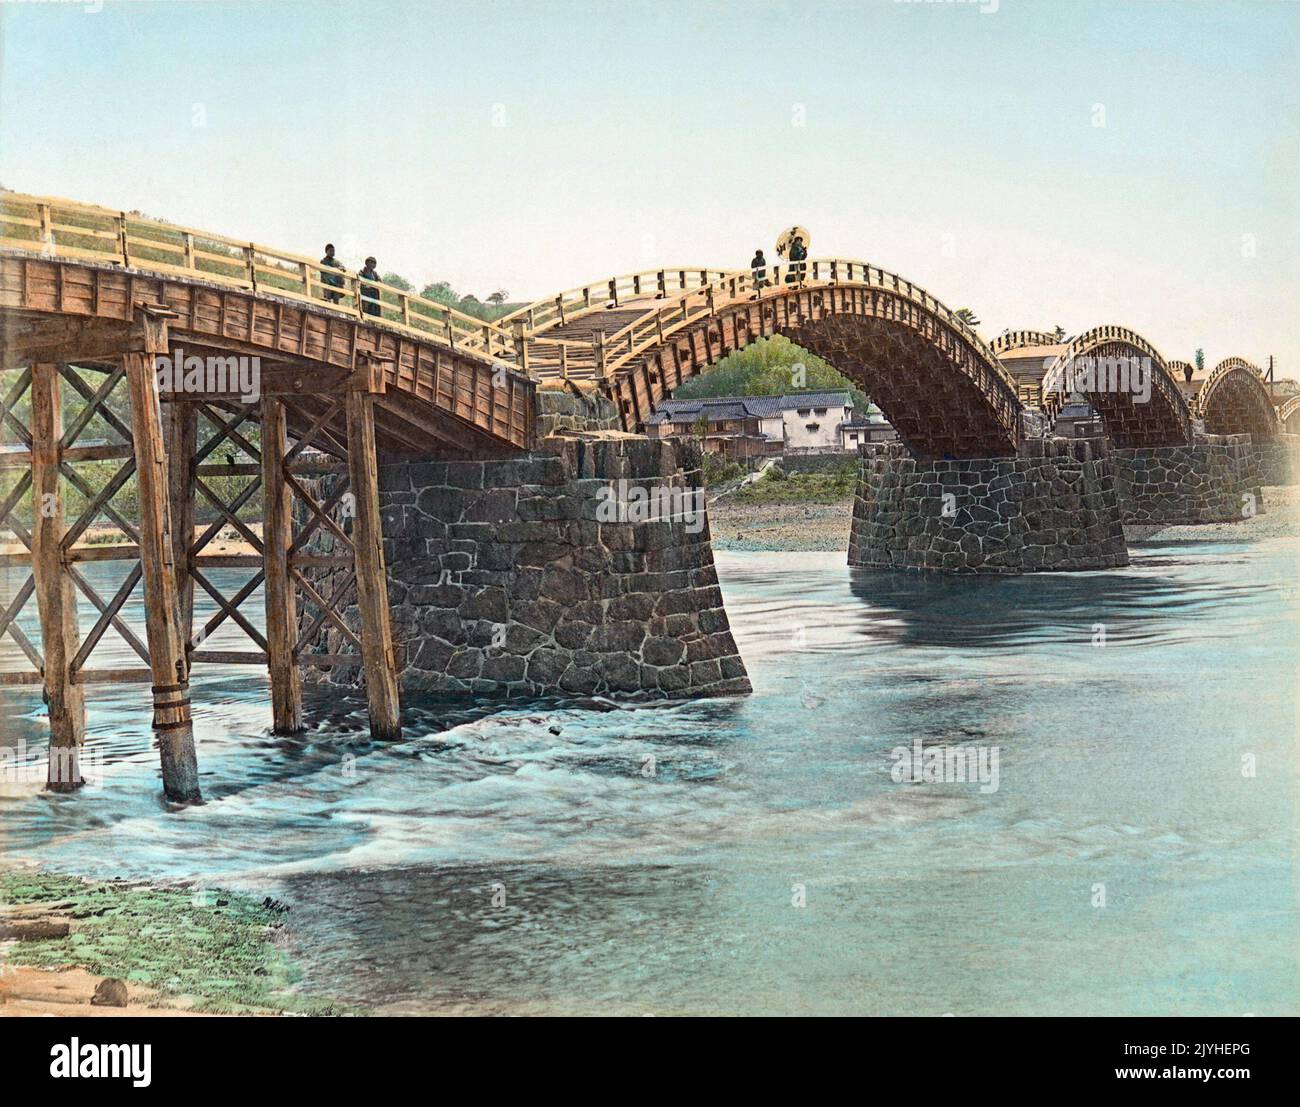 Japón: Kintai Bashi o Soroban Bashi, Iwakuni, Prefectura de Yamaguchi. Foto de Kusakabe Kimbei (1841-1934), c. 1880-1899. El puente Kintai es un puente histórico de arco de madera, en la ciudad de Iwakuni, en la prefectura de Yamaguchi. El puente fue construido en 1673, abarcando el río Nishiki en una serie de cinco arcos de madera, y el puente está situado a los pies del Monte Yokoyama, en la cima del cual se encuentra el Castillo Iwakuni. Declarado tesoro nacional en 1922, el parque Kikkou, que incluye el puente y el castillo, es uno de los destinos turísticos más populares de Japón. Foto de stock